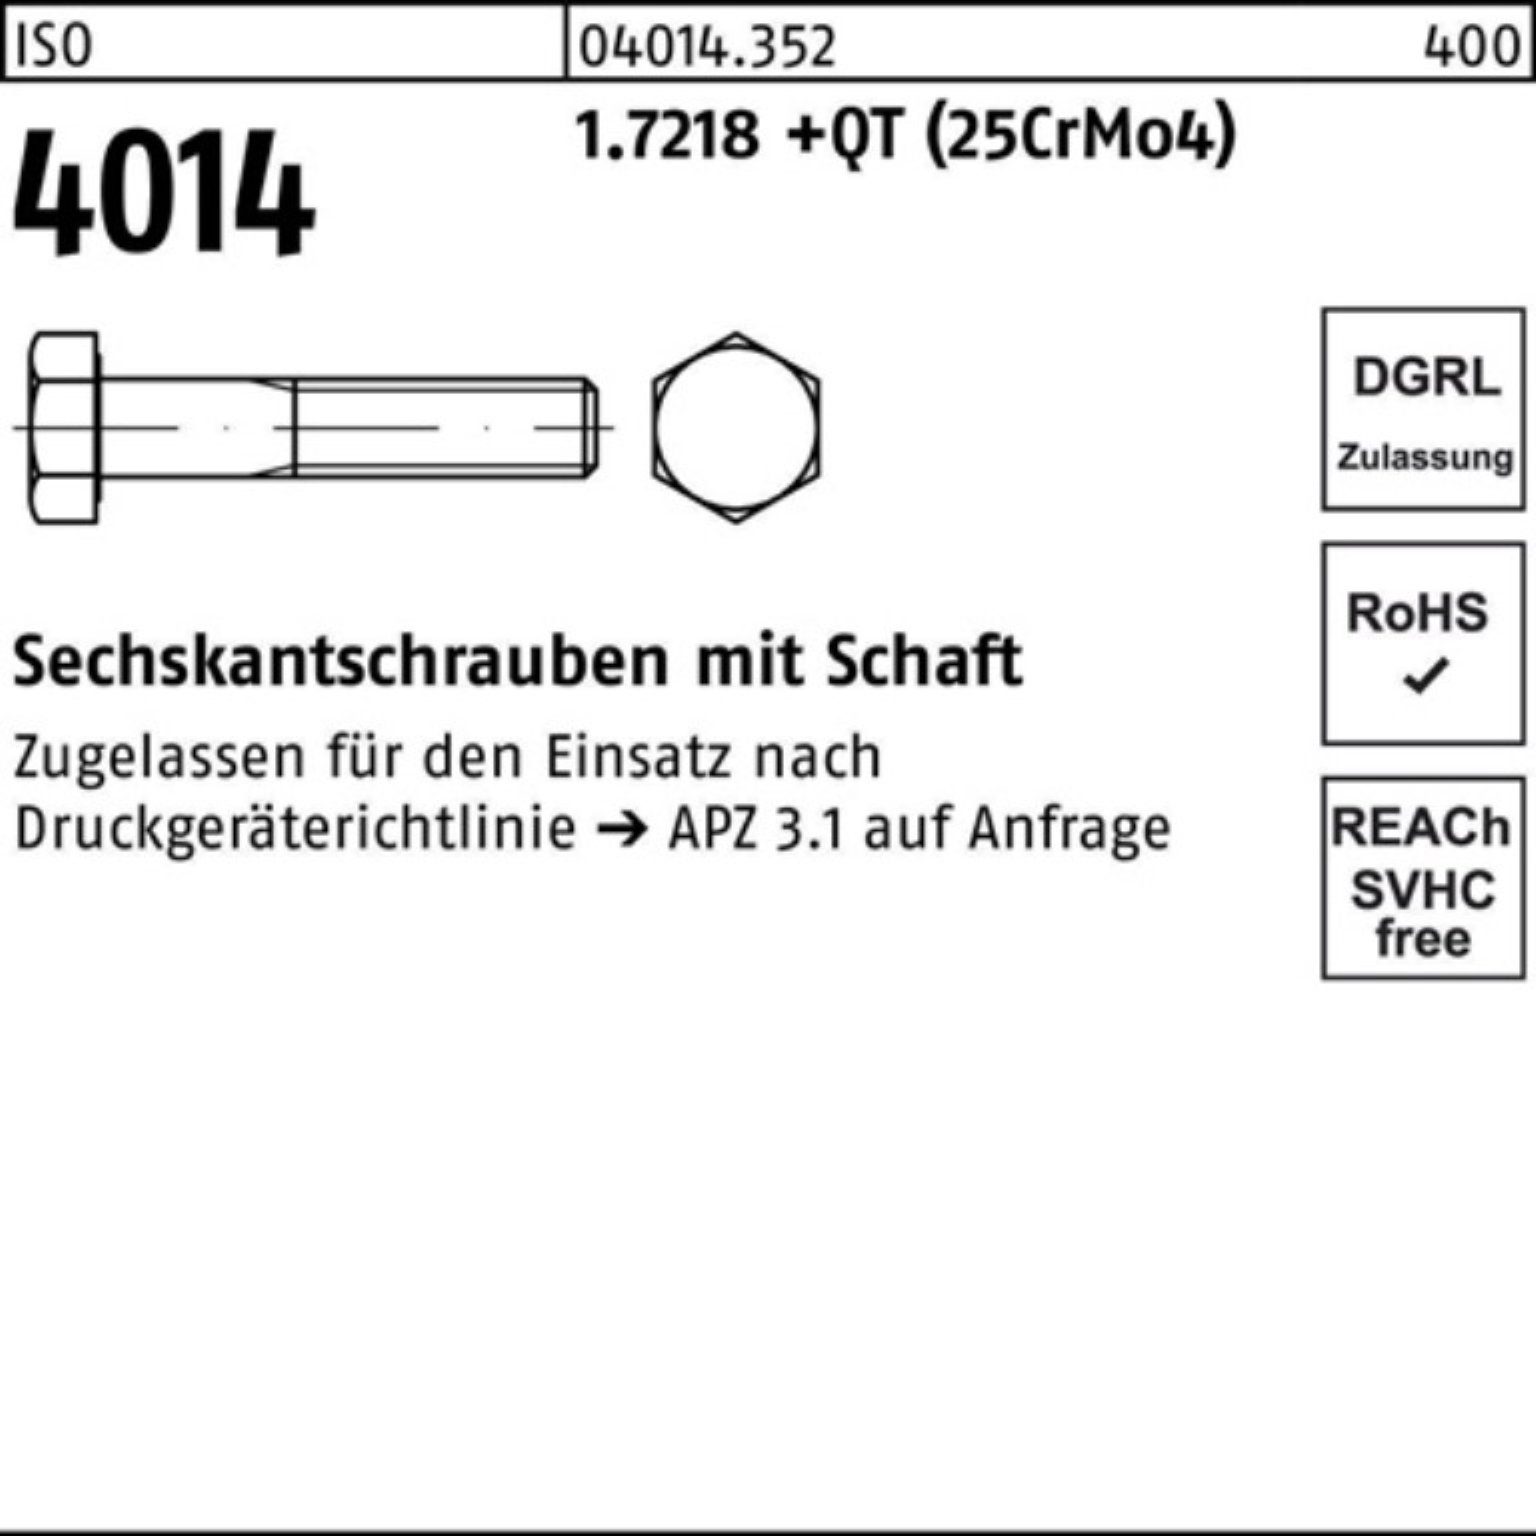 100er Sechskantschraube 1.7218 M30x +QT Schaft (25Cr Sechskantschraube Bufab 240 ISO Pack 4014